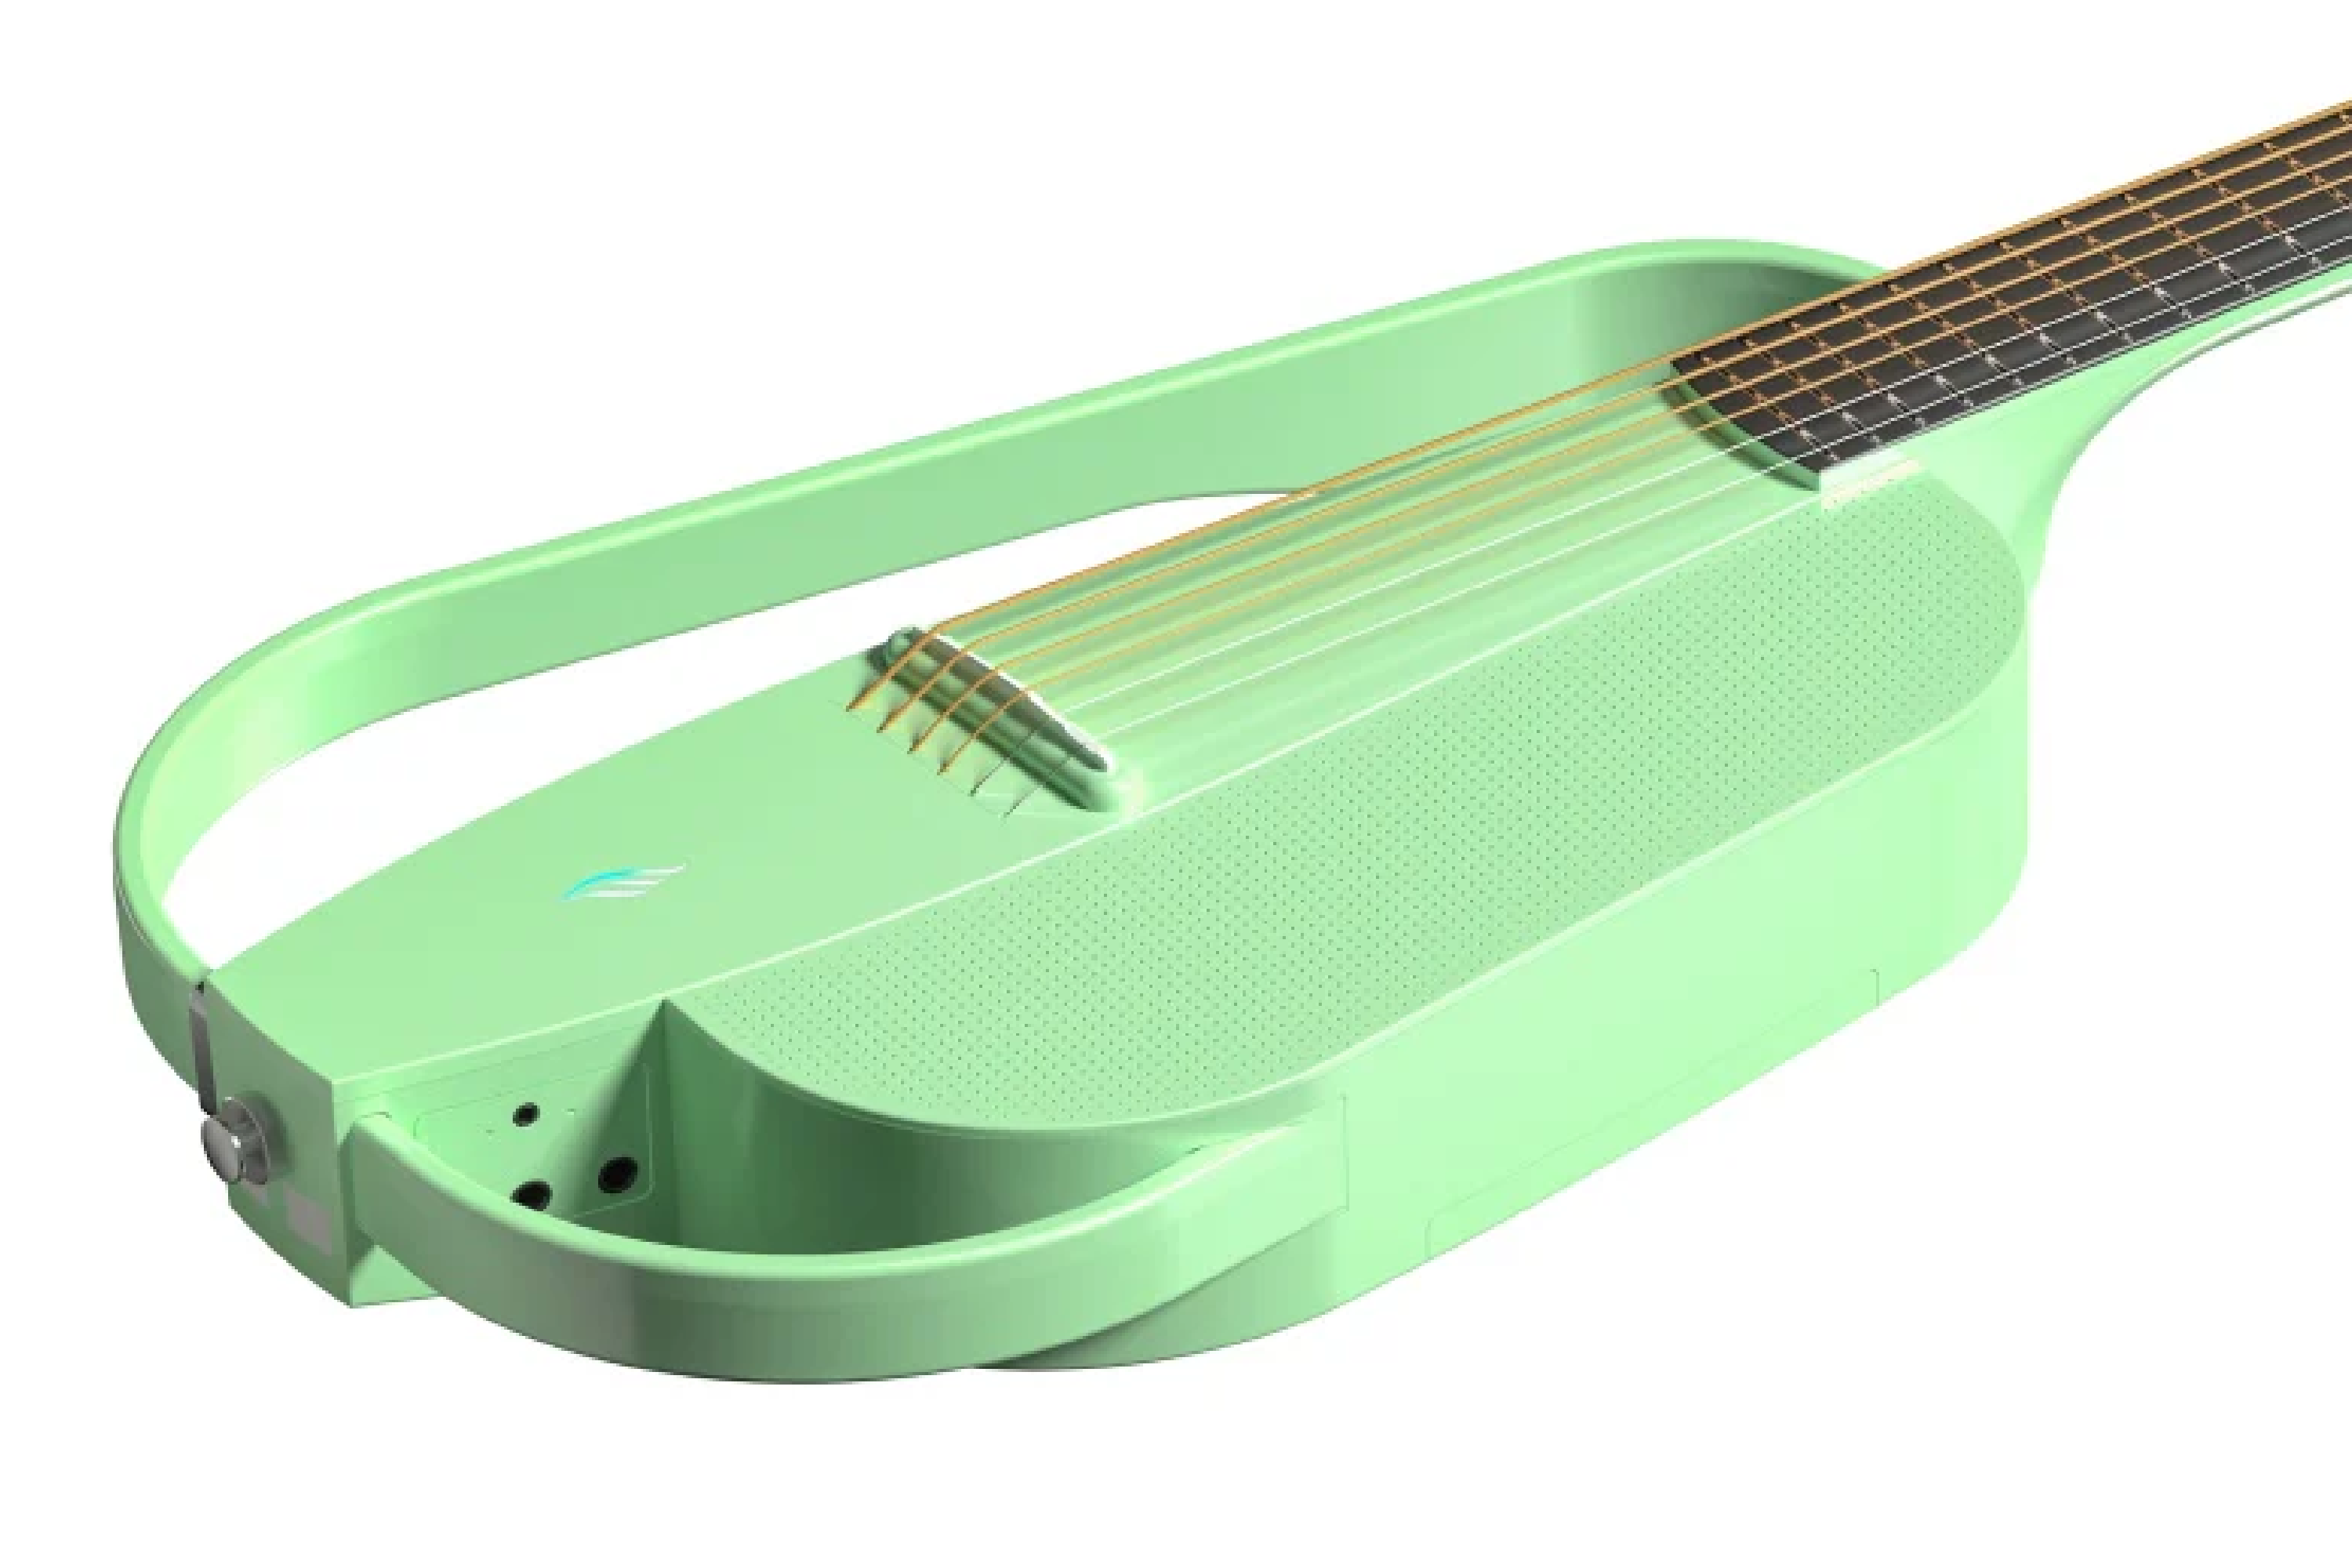 Enya NEXG SE Guitar - Green